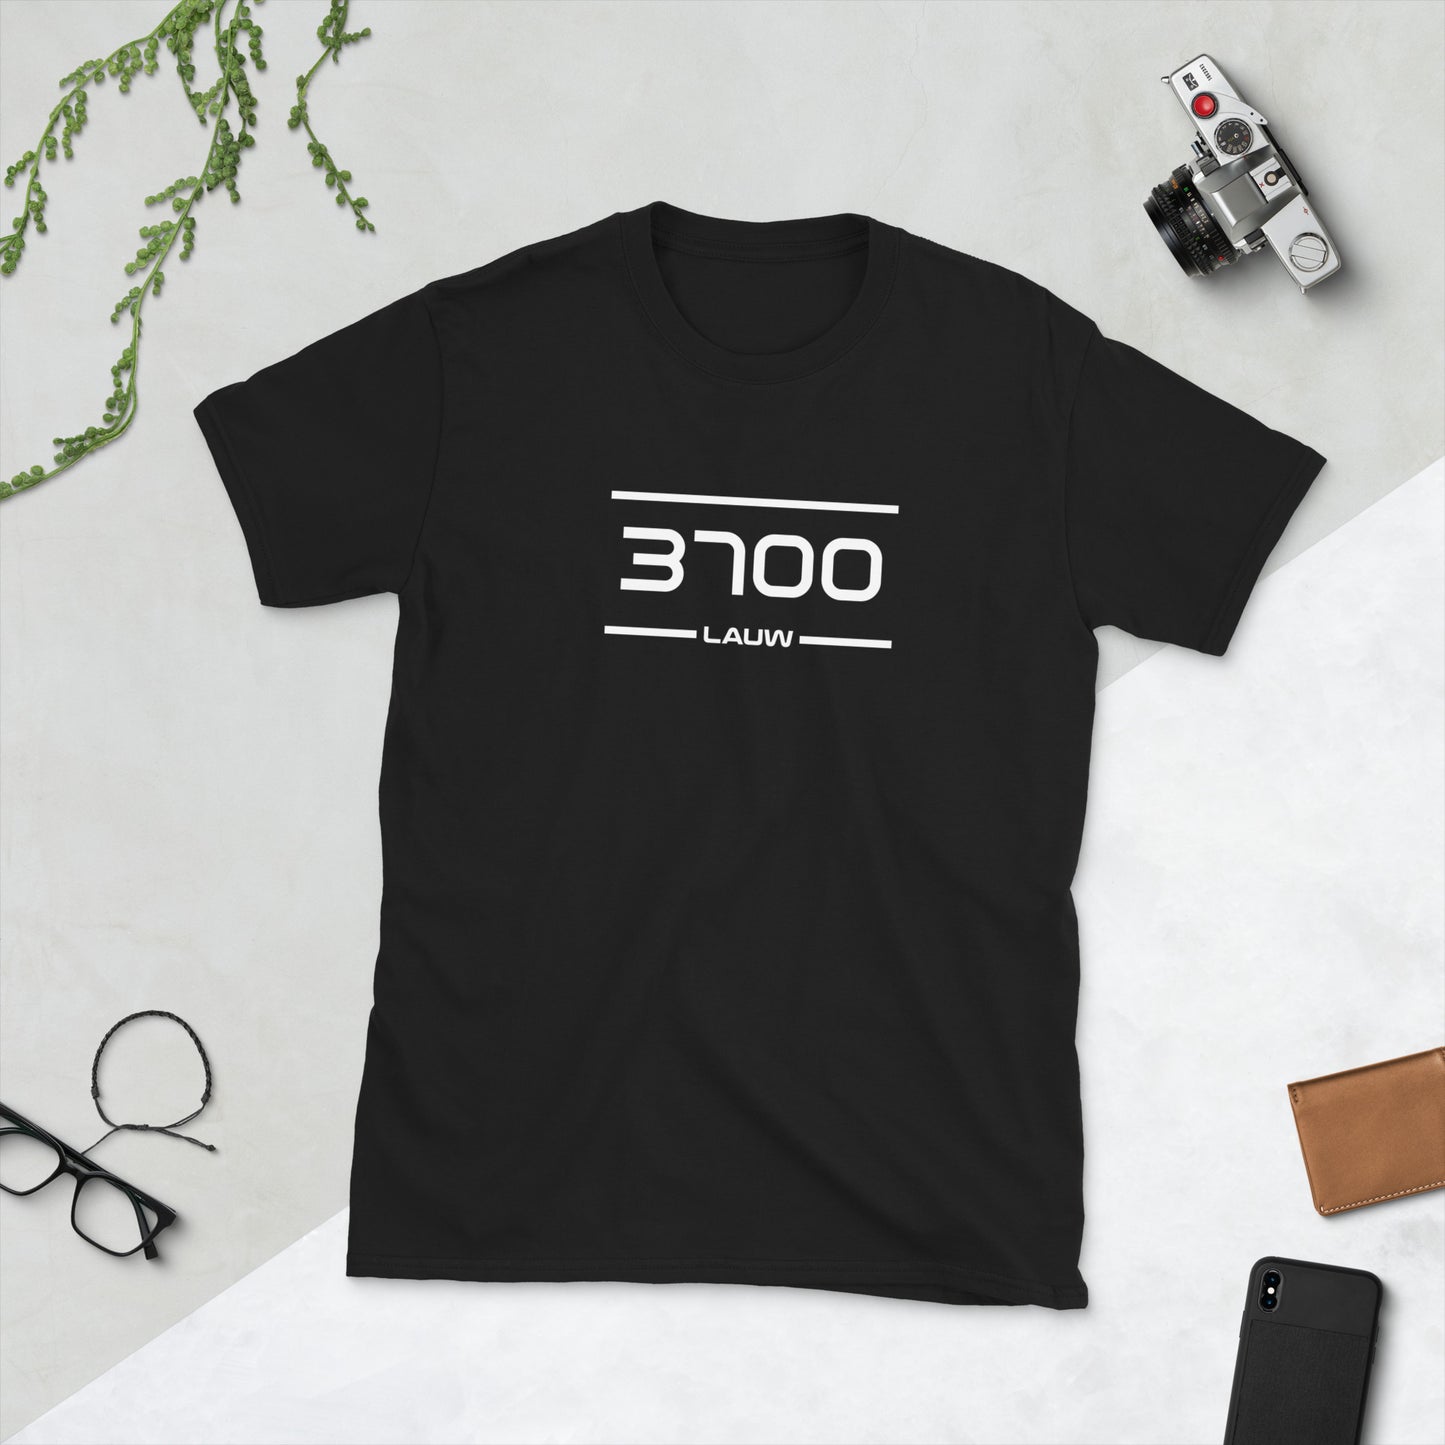 Tshirt - 3700 - Lauw